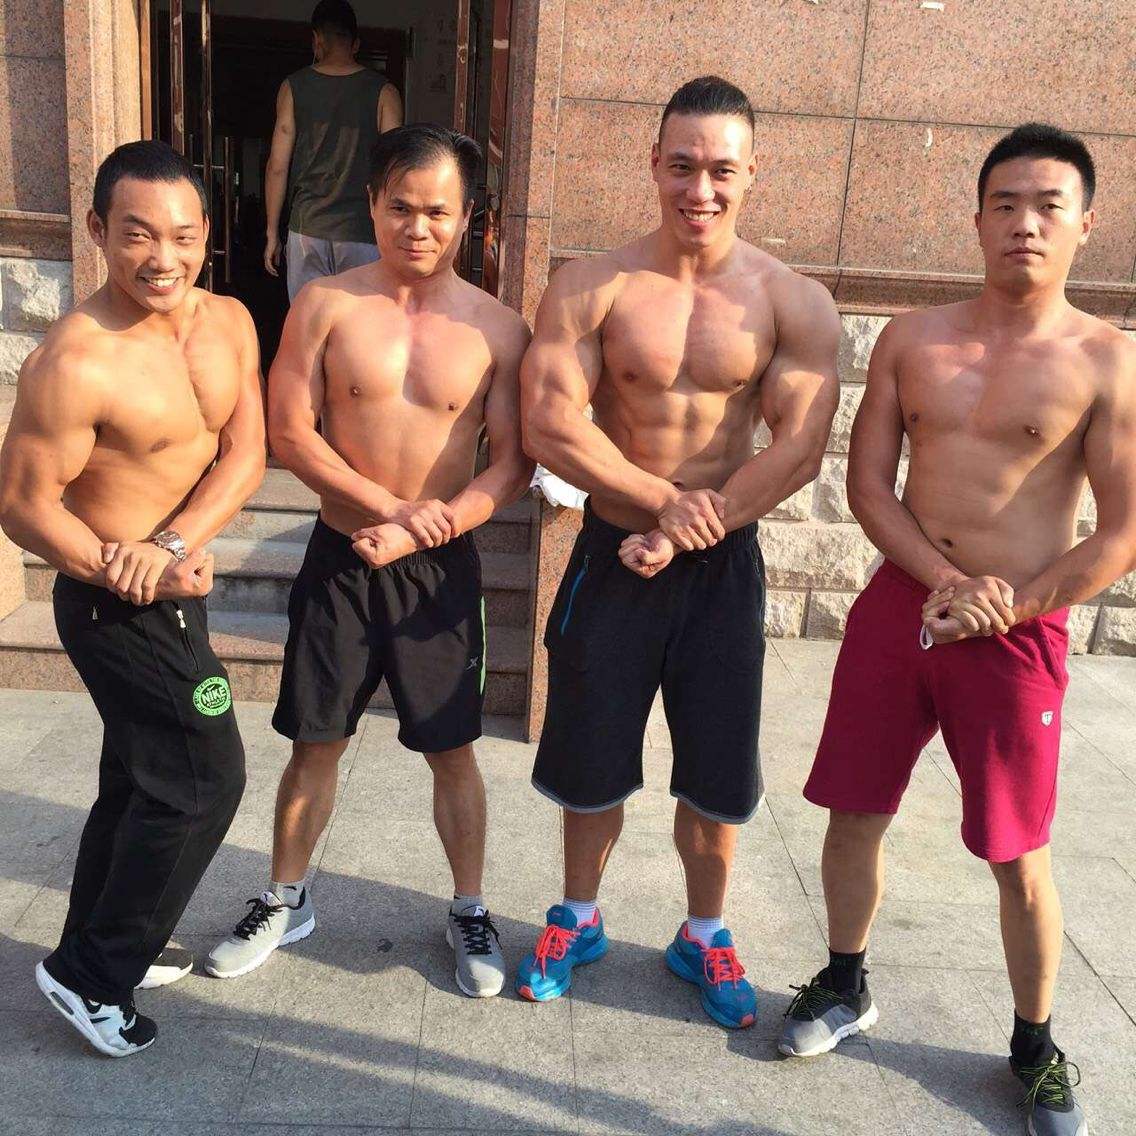 杭州567GO国际健身教练学院